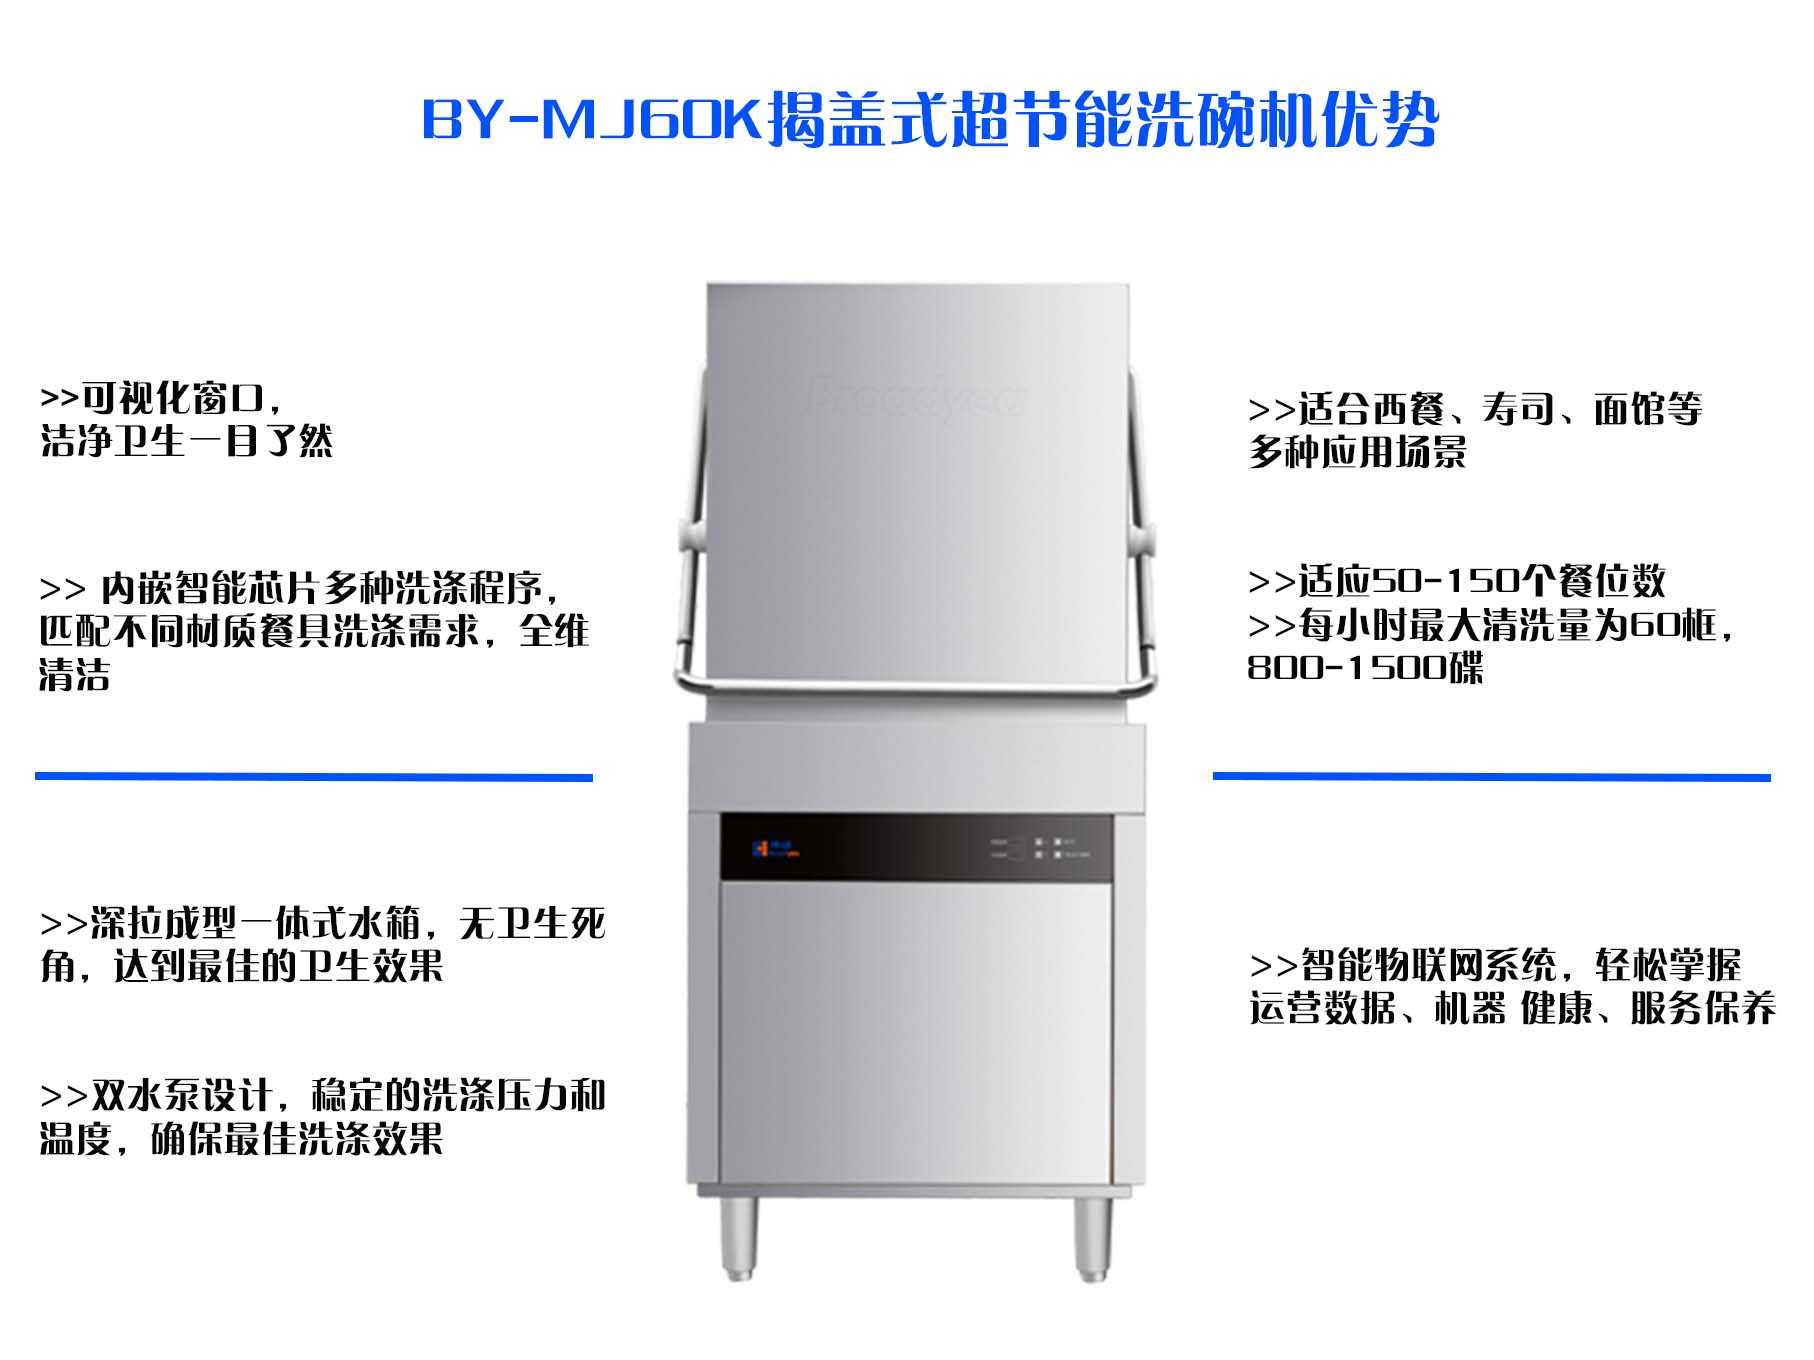 博扬BY-MJ60K揭盖式超节能洗碗机